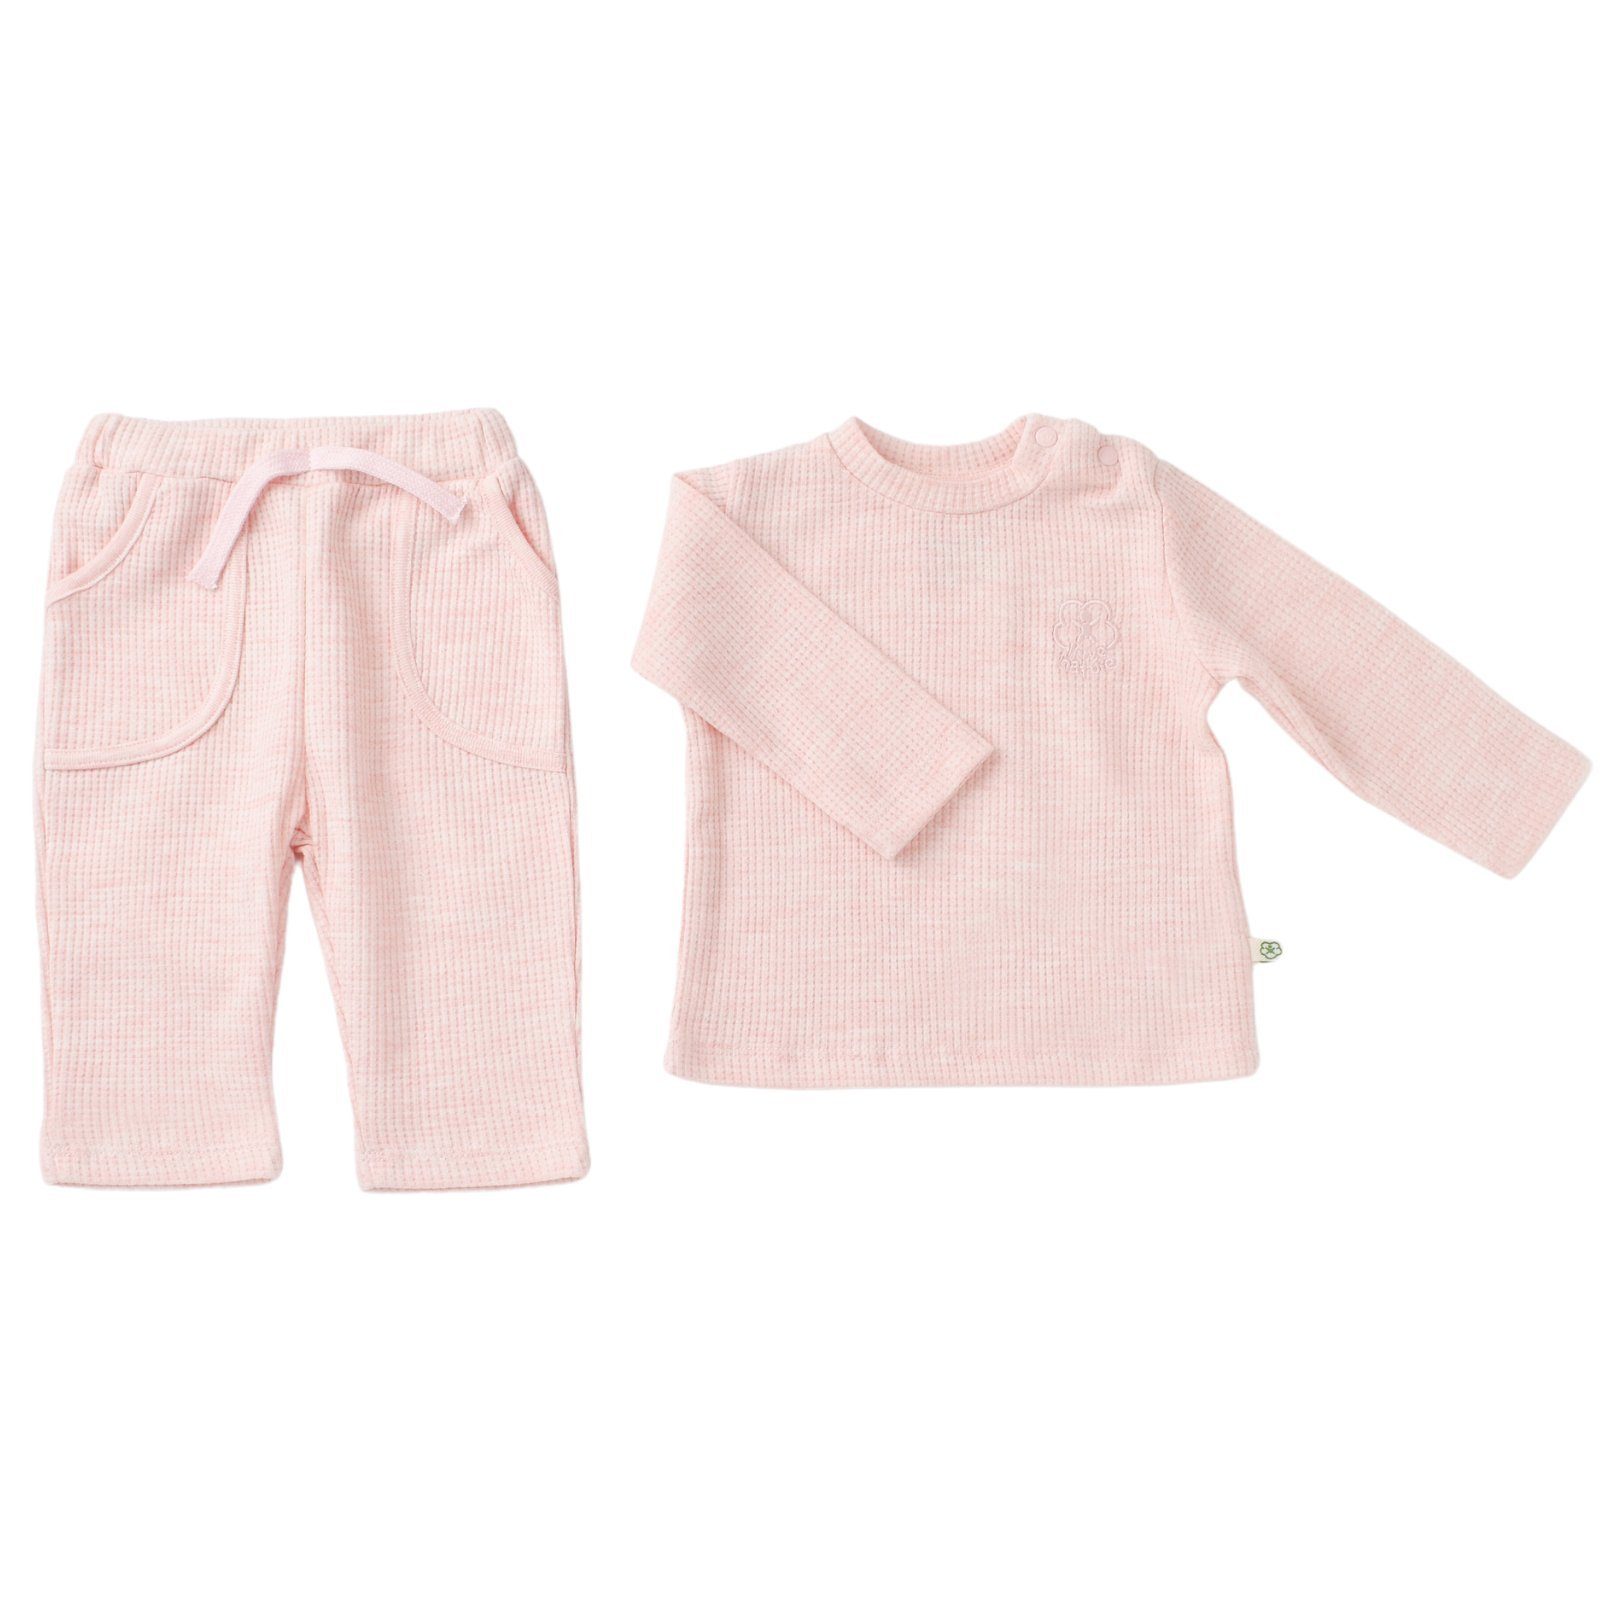 biorganic Schlafanzug Shirt & Hose Baby Set Nature In Waffle für Jungen und Mädchen Unisex (Pyjama-Set, 2 tlg., Langarmshirt + Hose) Waffle-Struktur, 100% Bio-Baumwolle, GOTS-zertifiziert rosa